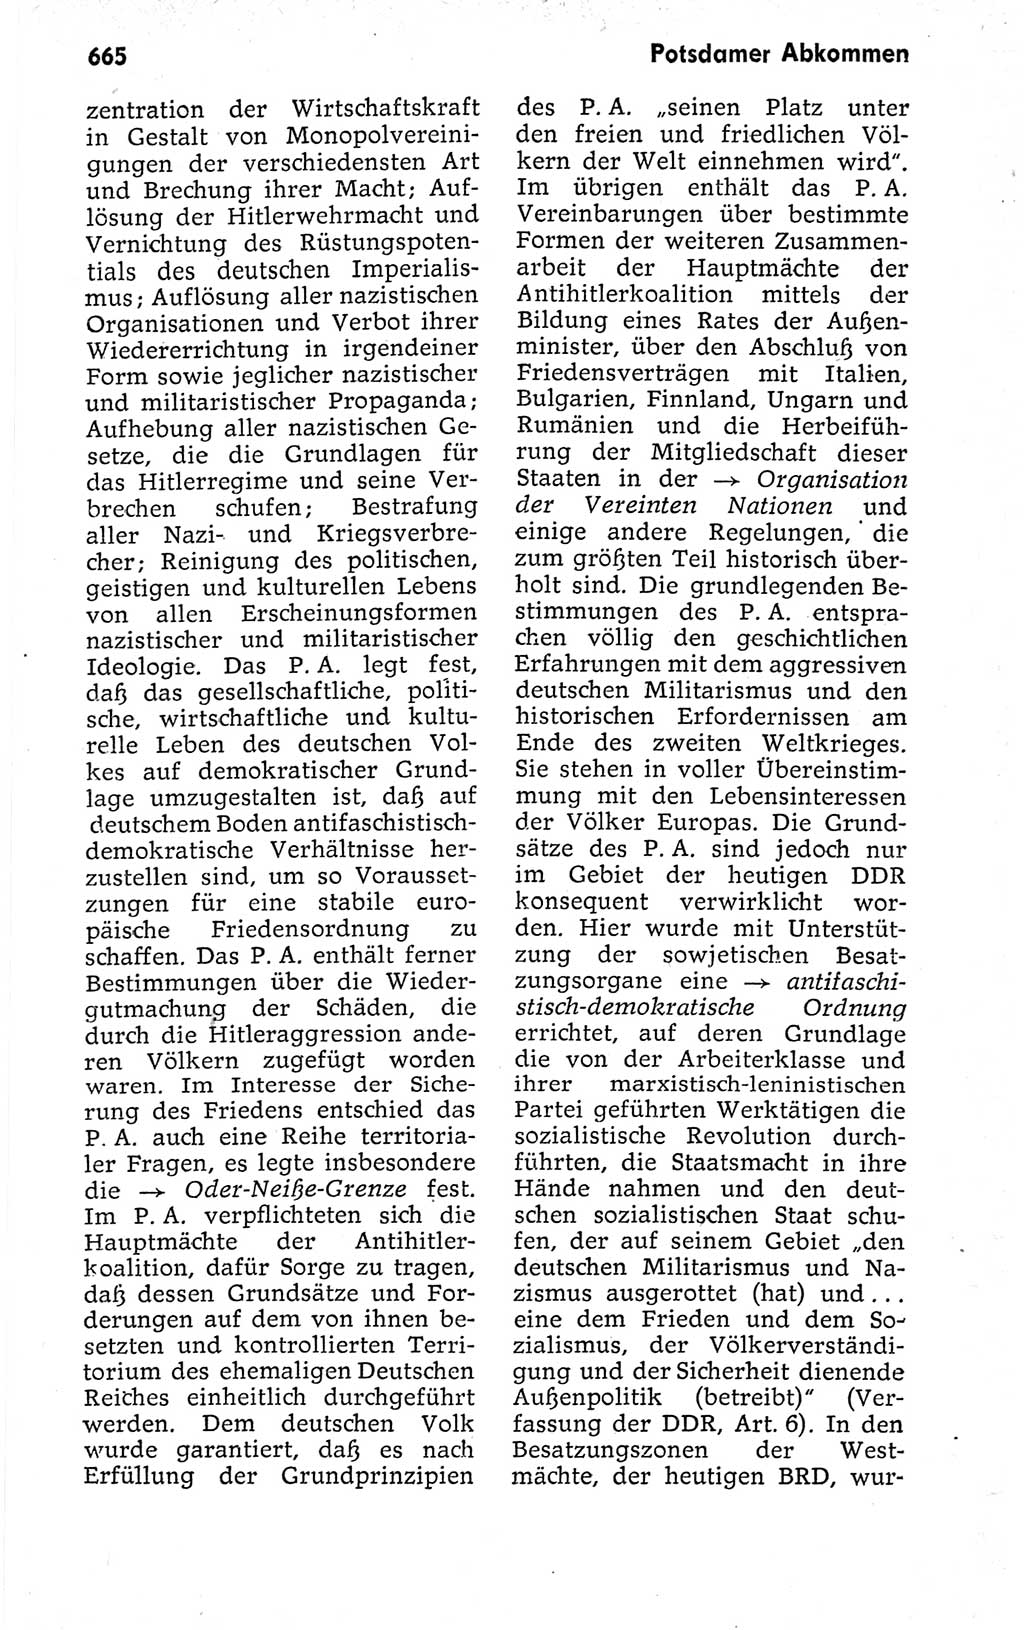 Kleines politisches Wörterbuch [Deutsche Demokratische Republik (DDR)] 1973, Seite 665 (Kl. pol. Wb. DDR 1973, S. 665)